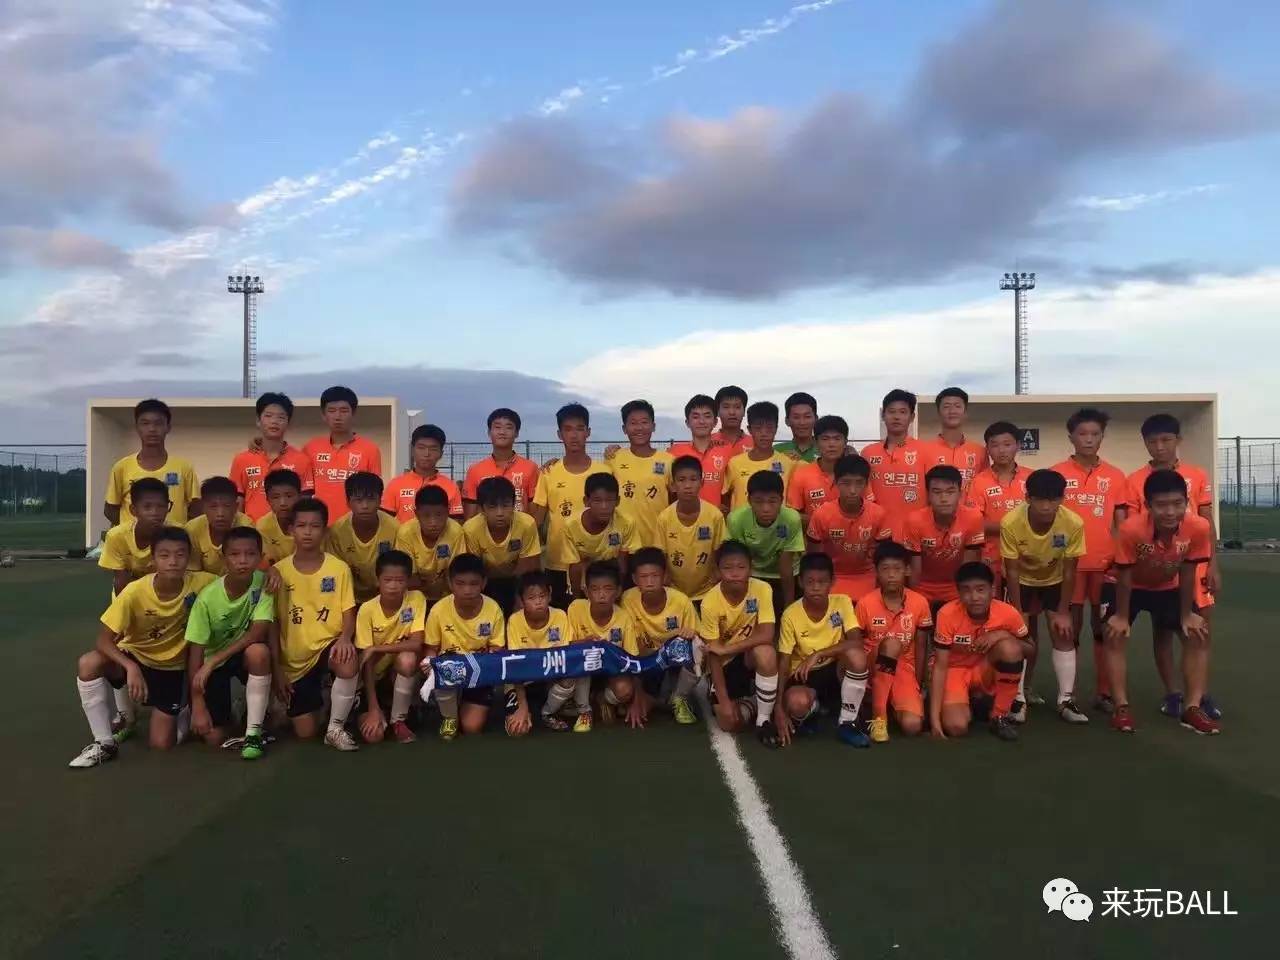 成基金公益冬令营参赛队伍巡礼:广州富力足球